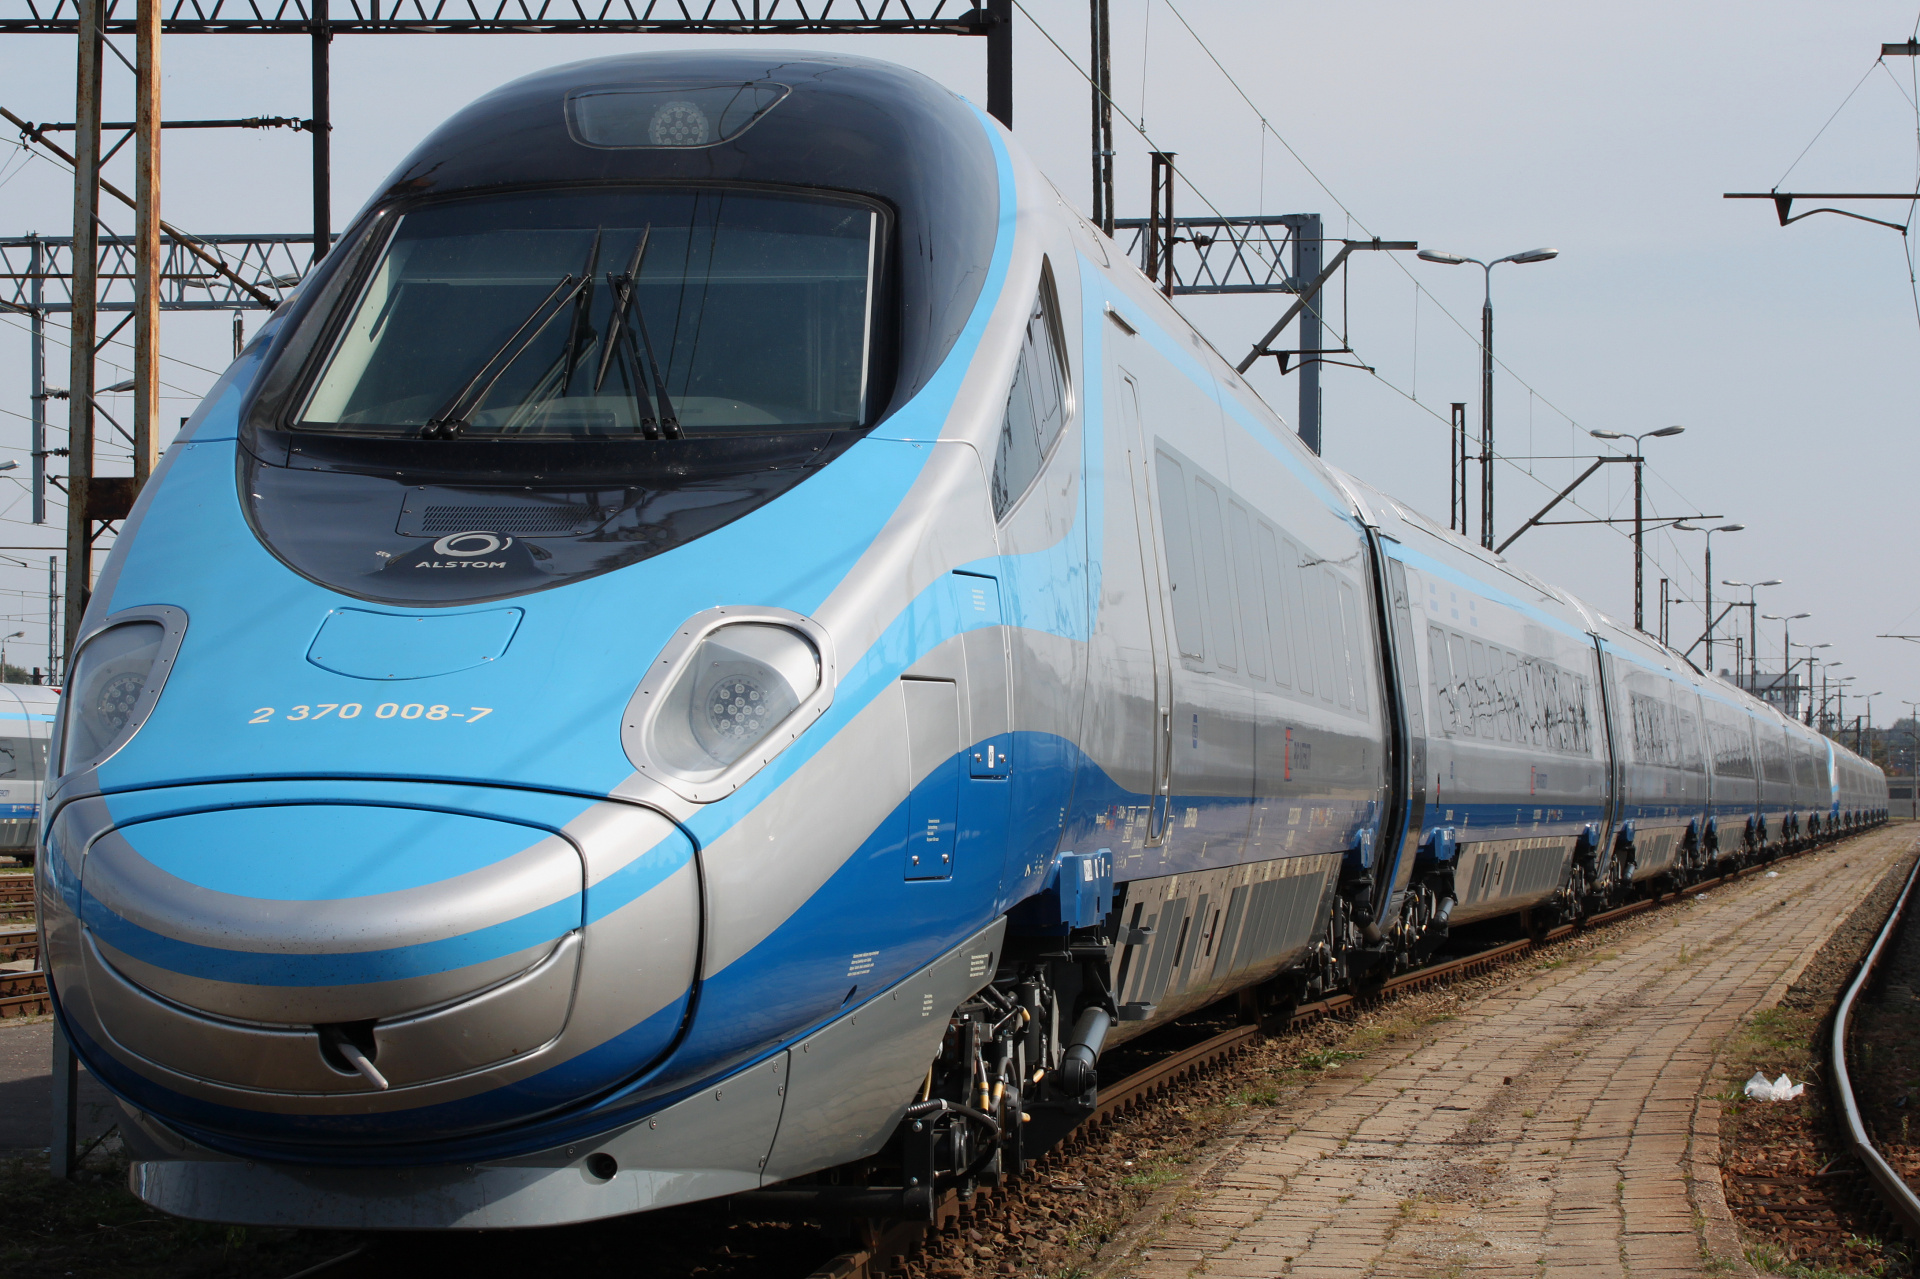 ED250-002 (Pojazdy » Pociągi i lokomotywy » Alstom ETR 610 Pendolino)